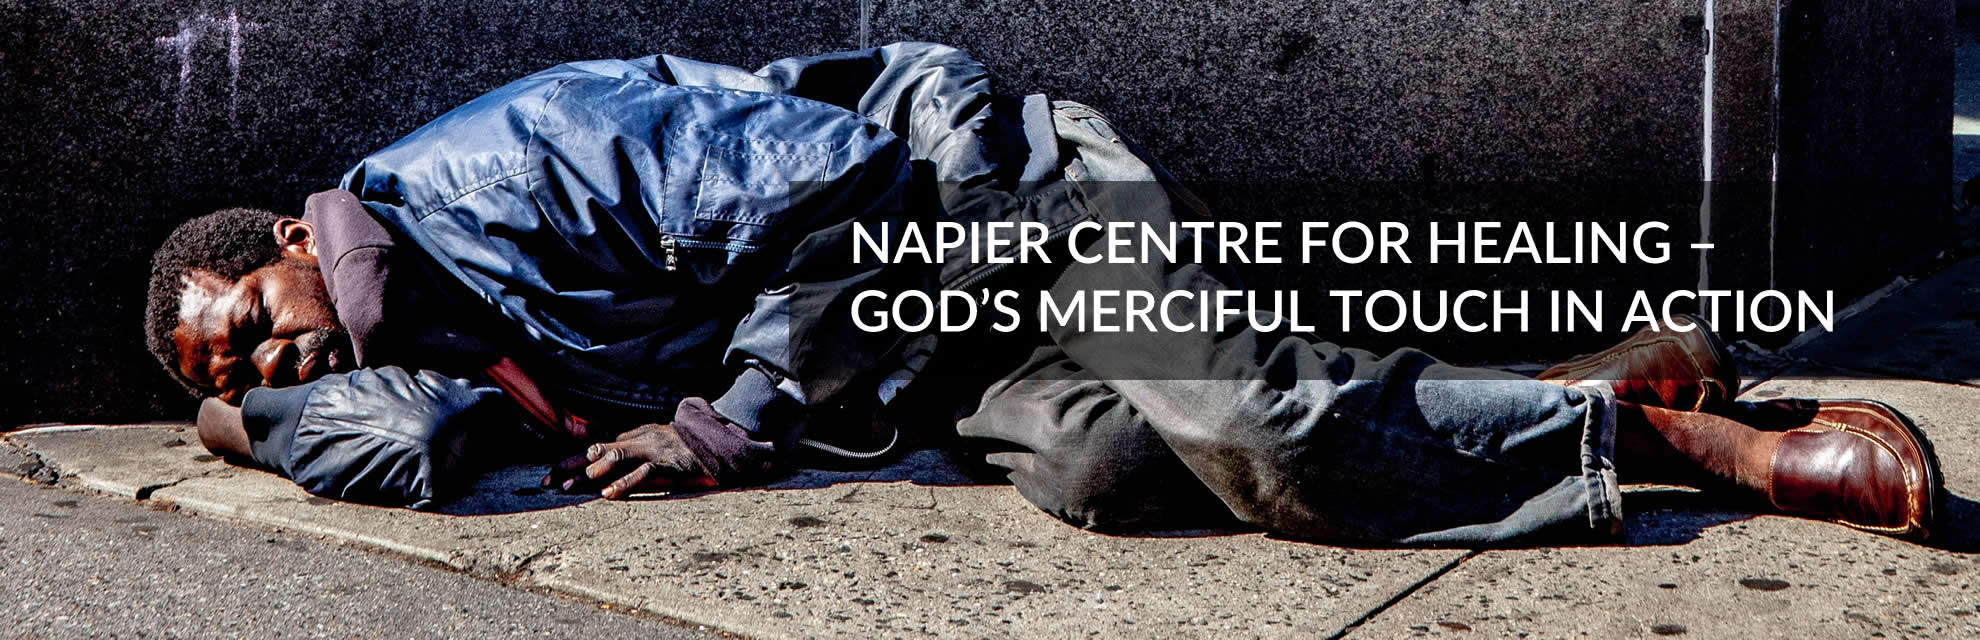 Napier Centre for Healing